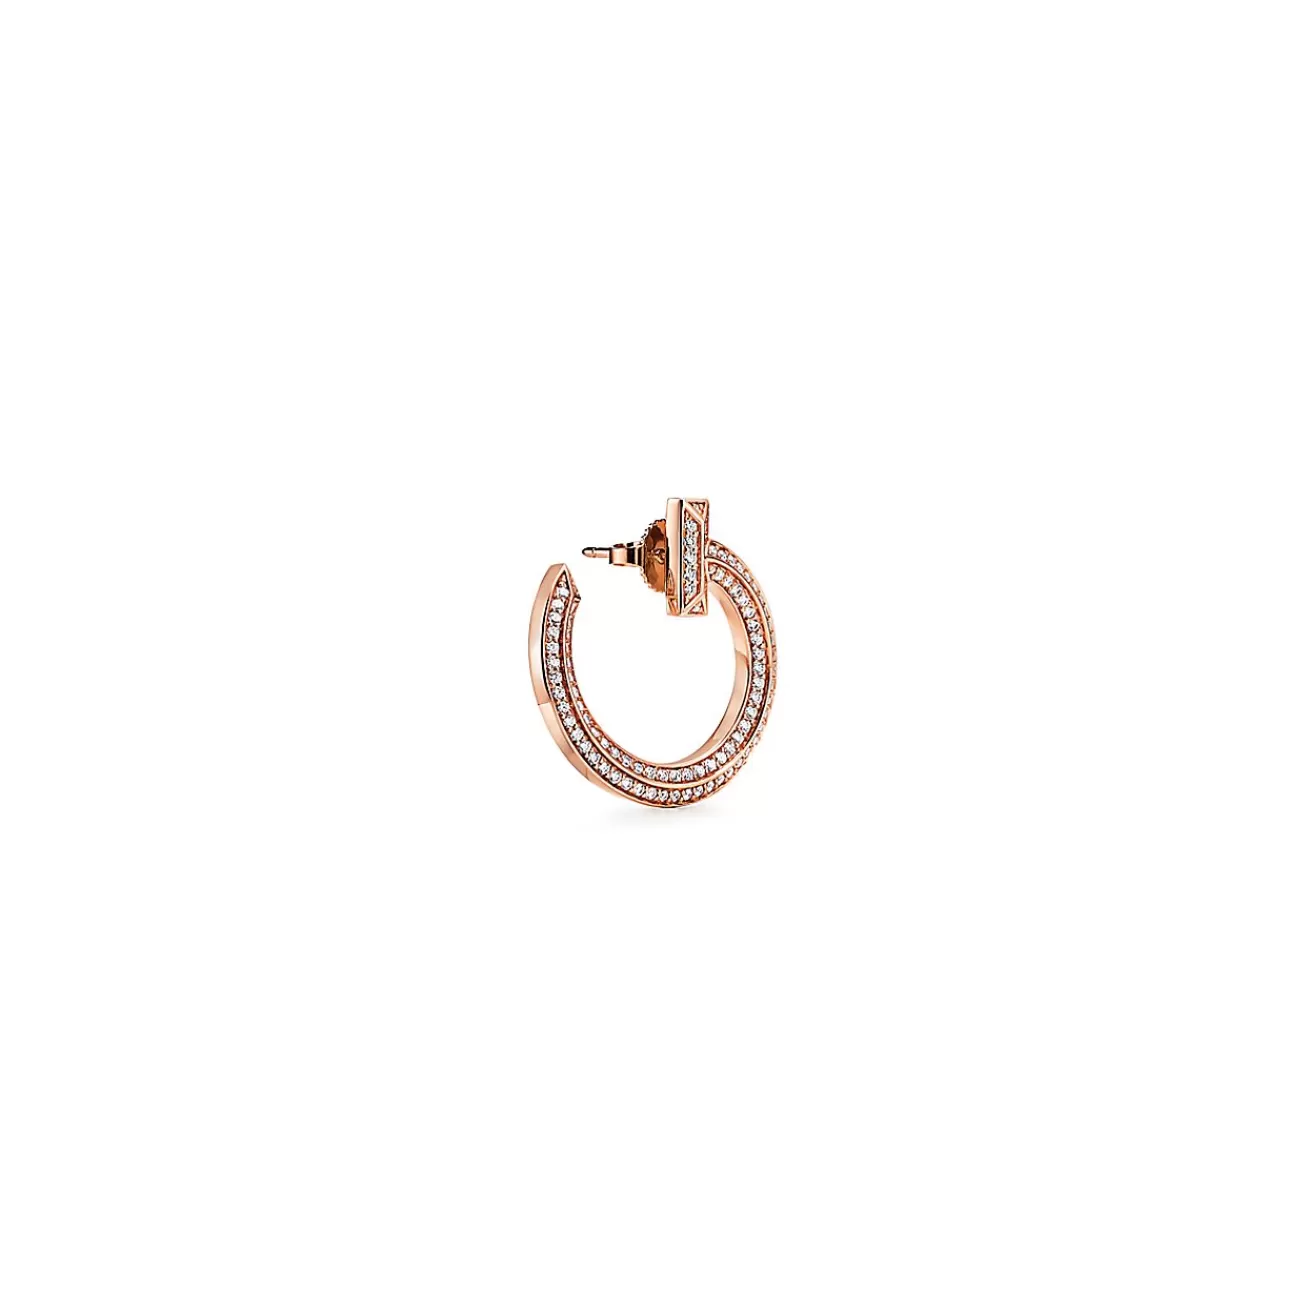 Tiffany & Co. Tiffany T T1 open hoop earrings in 18k rose gold with diamonds. | ^ Earrings | Hoop Earrings